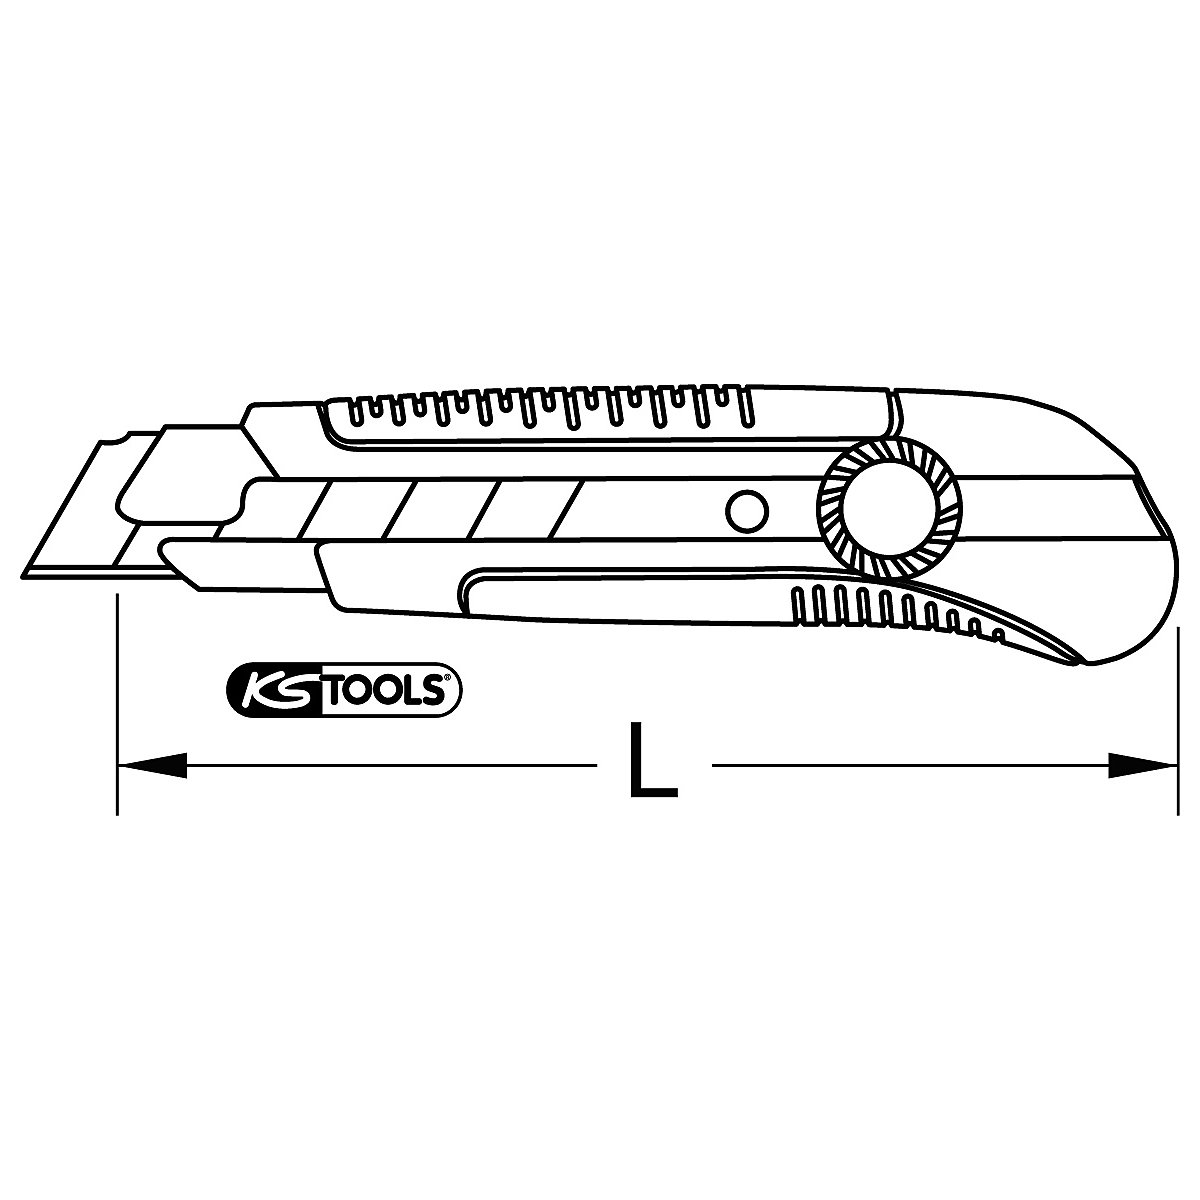 X-ato confortável com lâmina destacável – KS Tools (Imagem do produto 5)-4